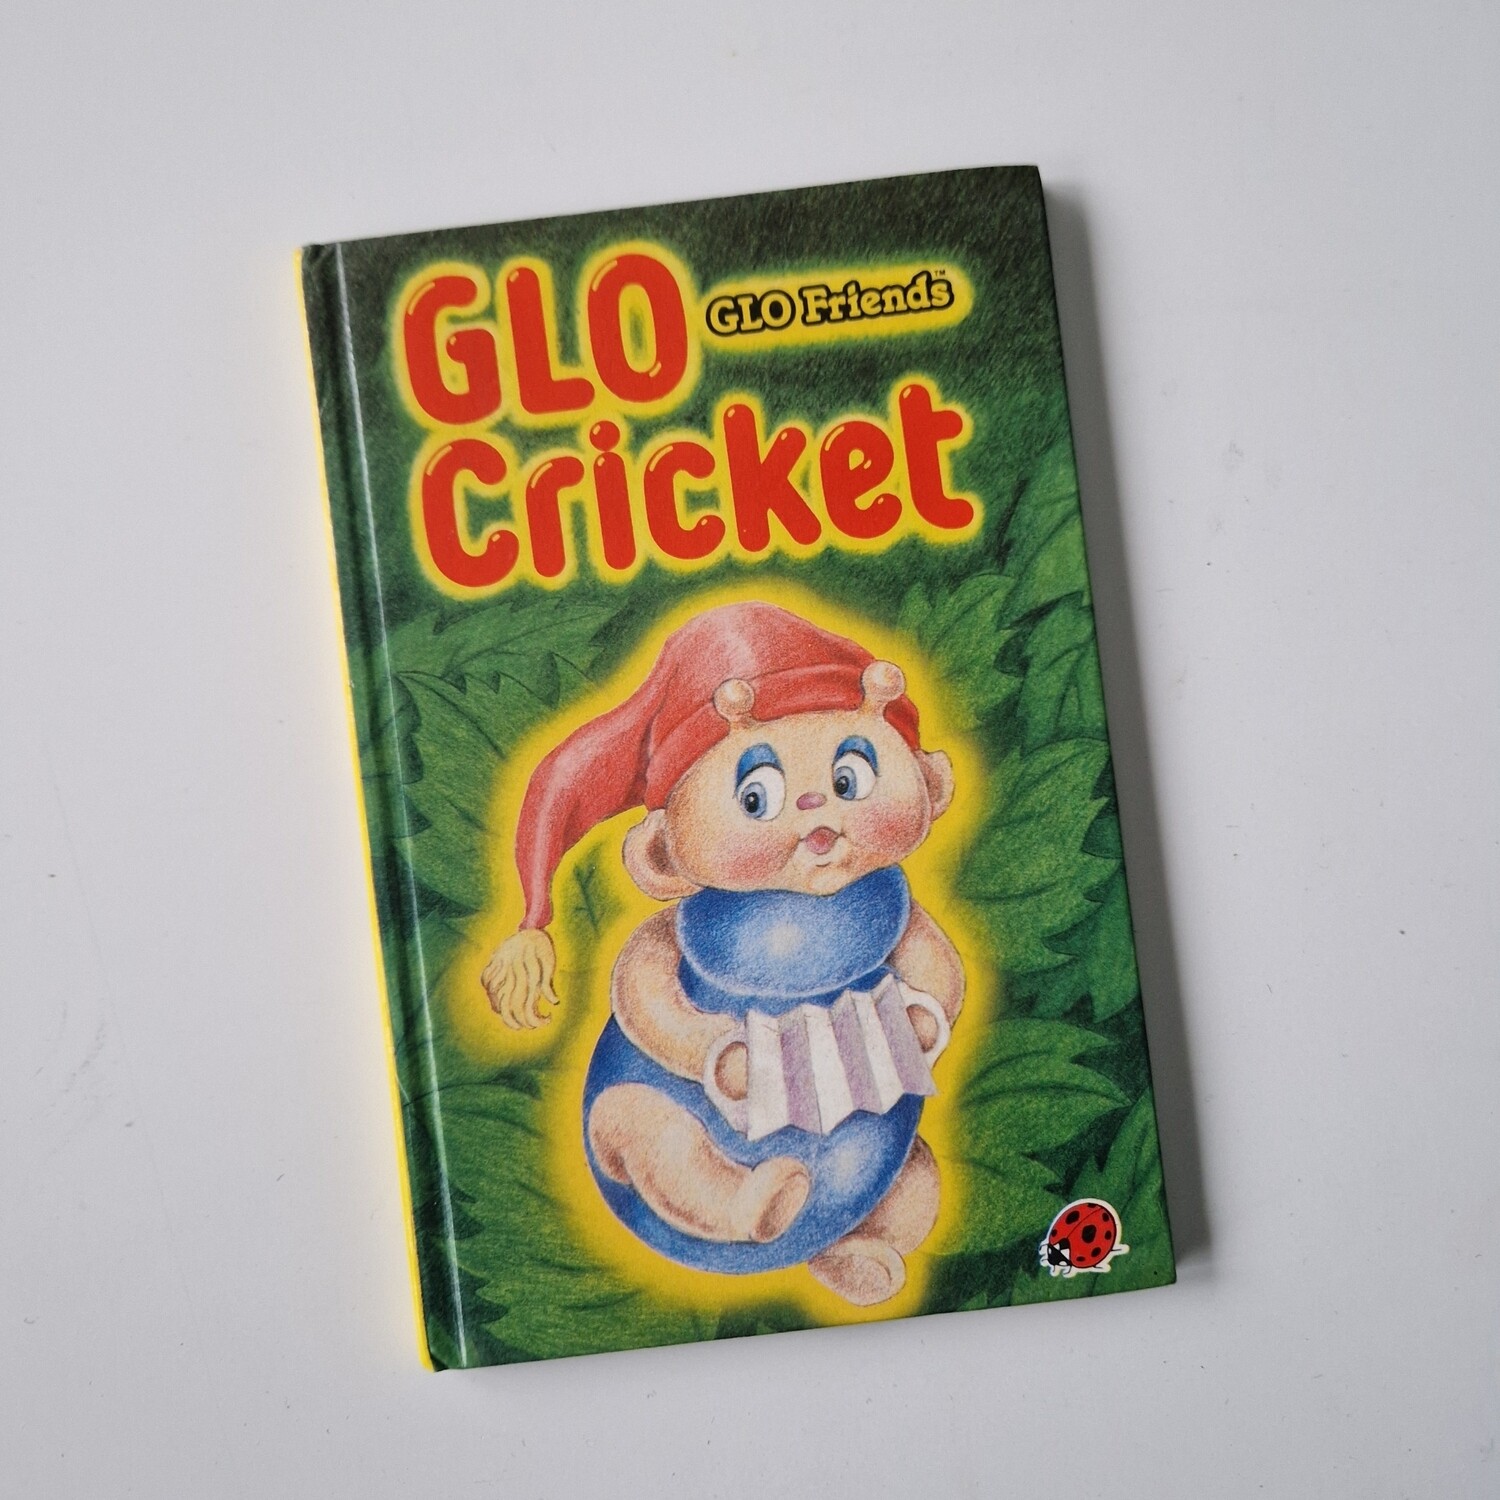 Glo Friends - Cricket